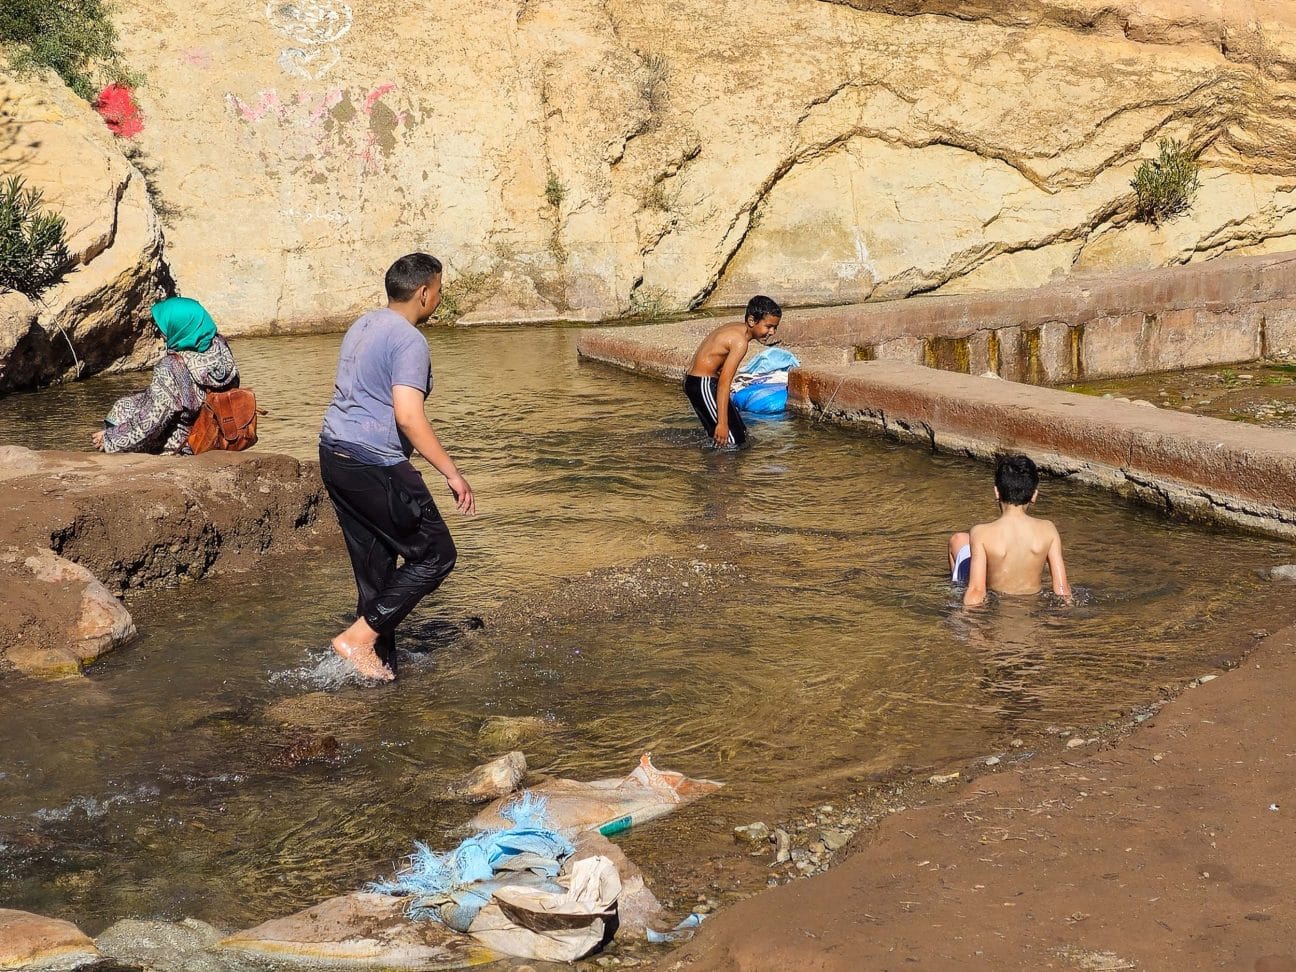 Marokkanische Kinder baden im kalten Wasser